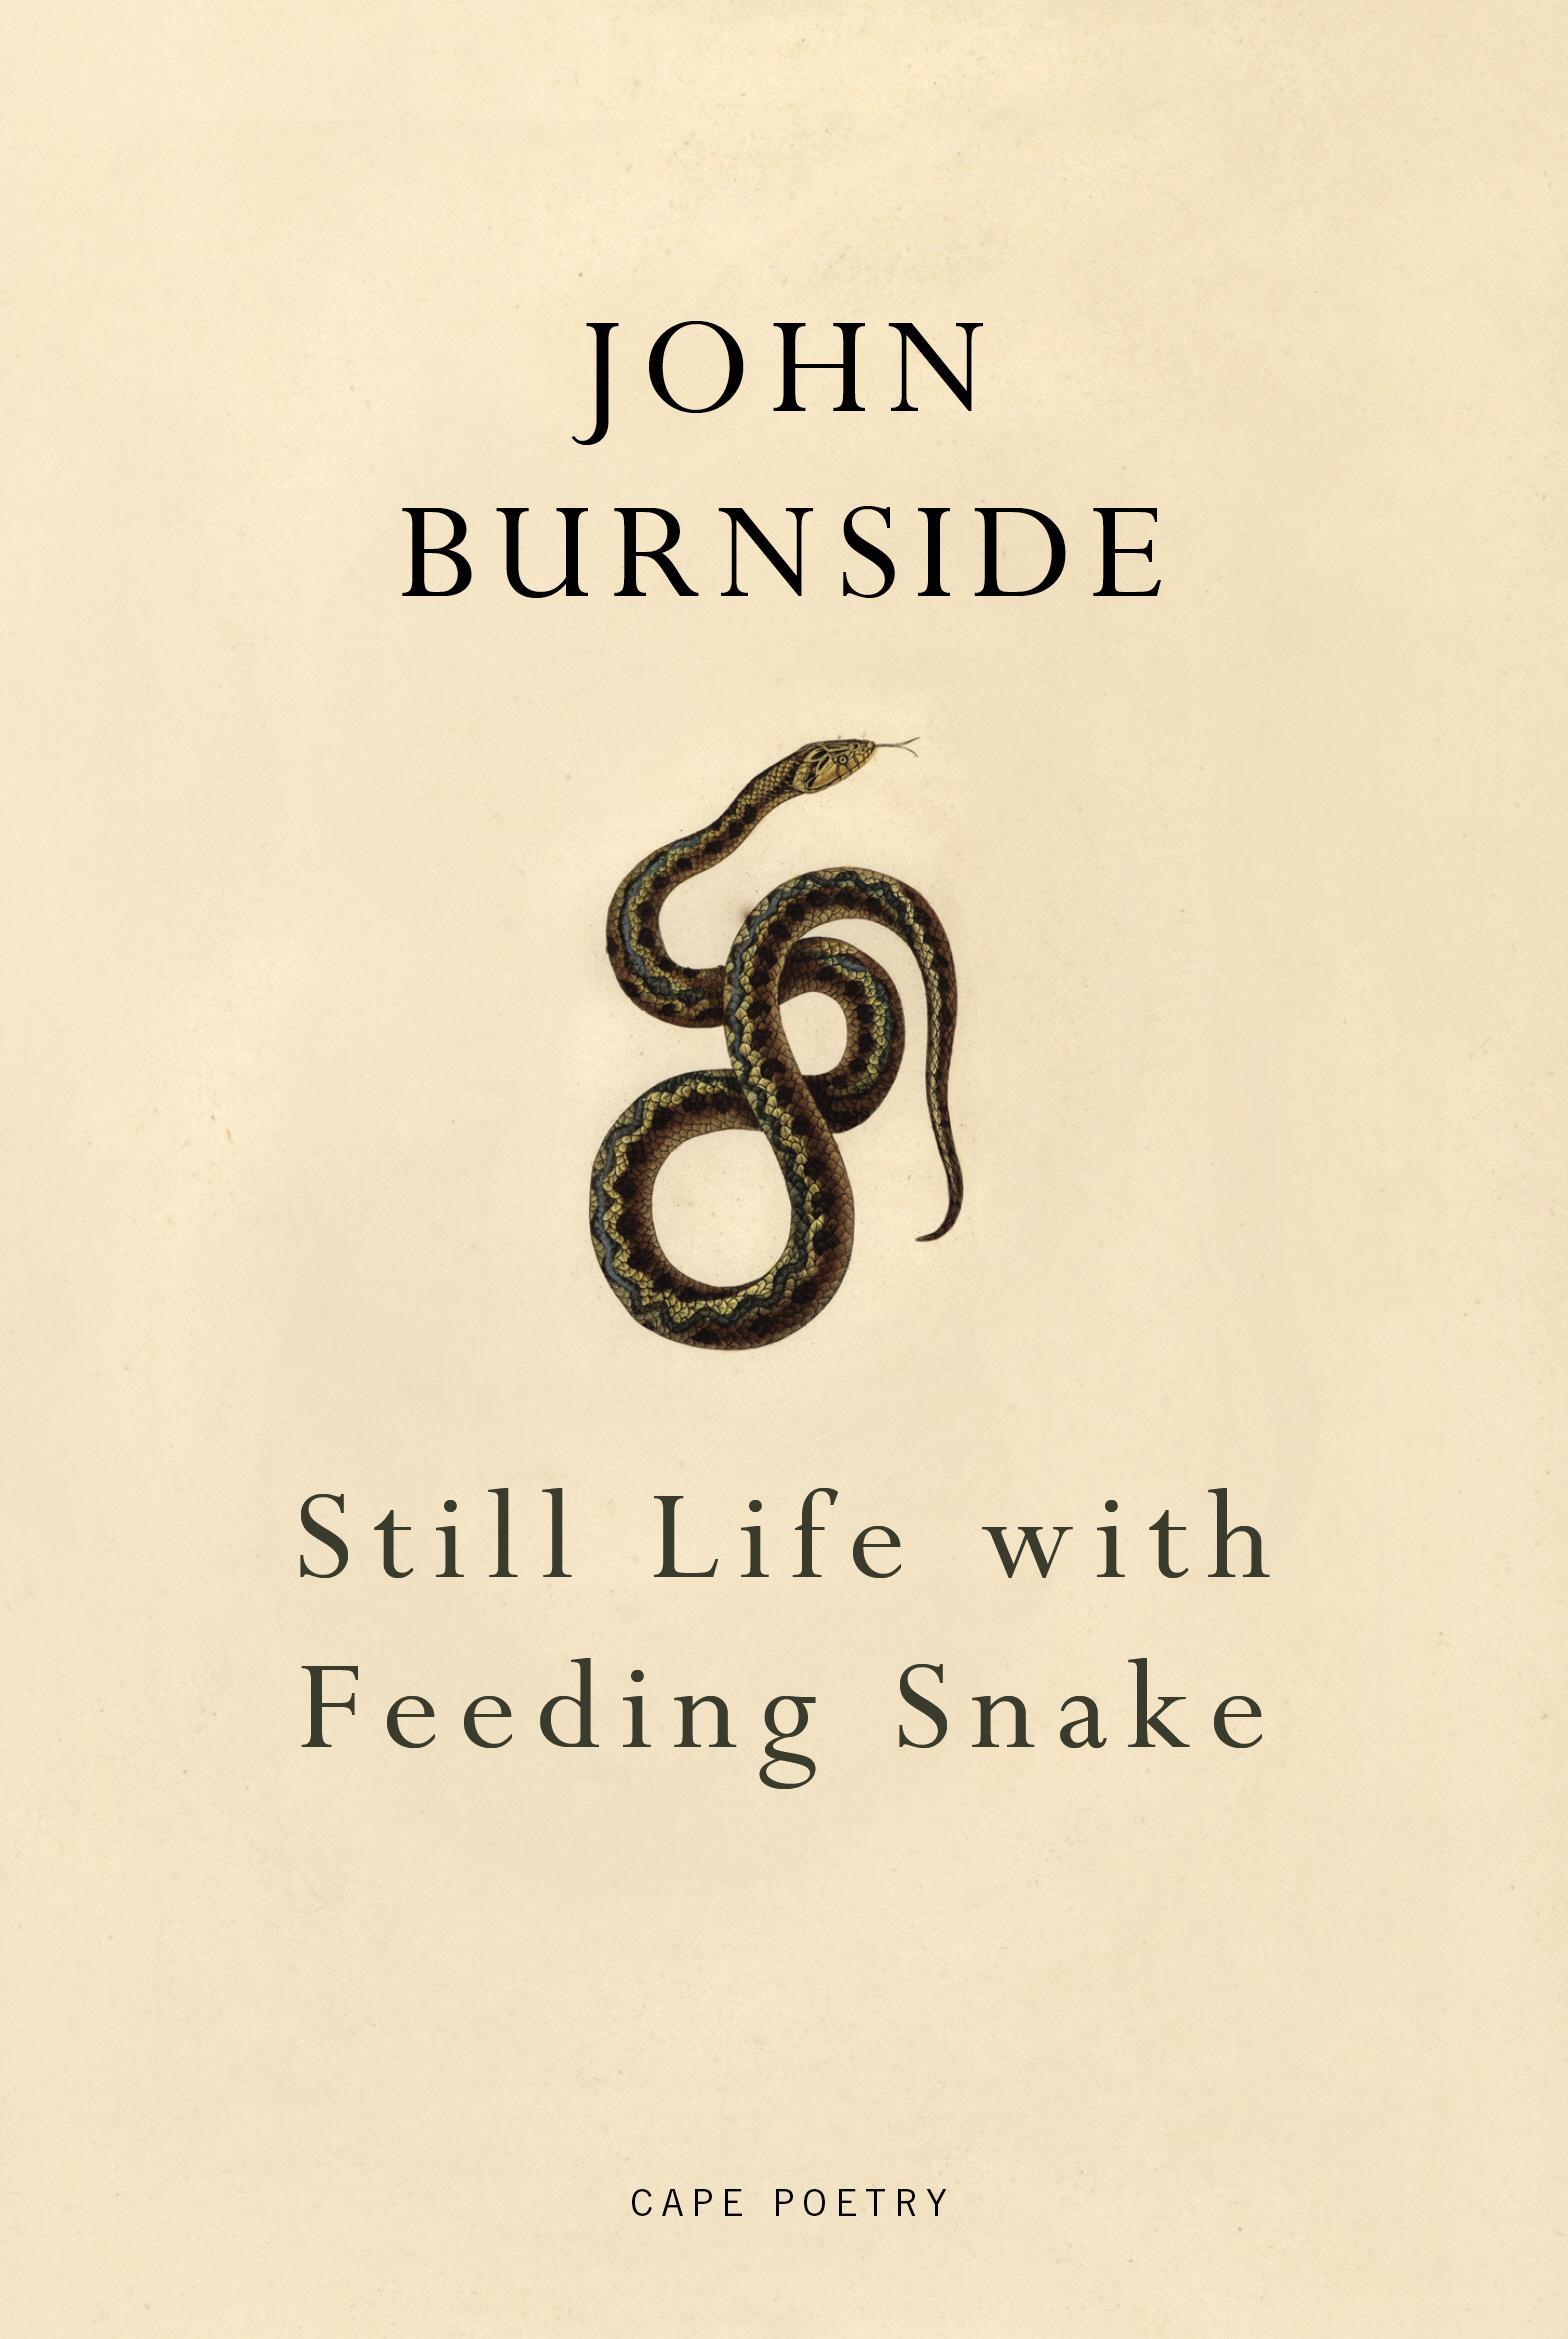 Still Life with Feeding Snake - John Burnside